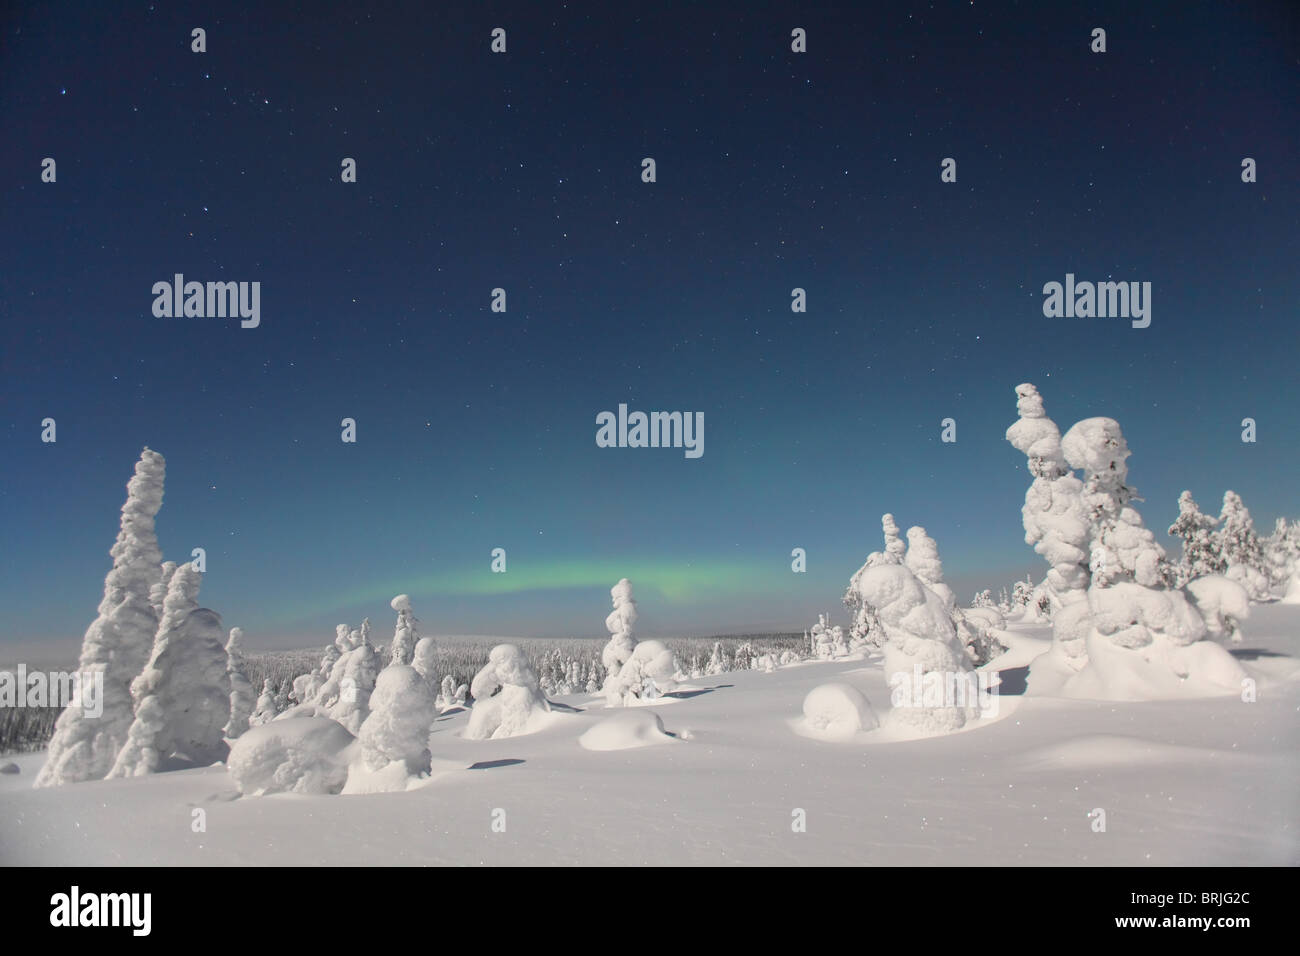 Aurore boréale au paysage de neige dans le Parc National de Riisitunturi la nuit, Finlande Banque D'Images